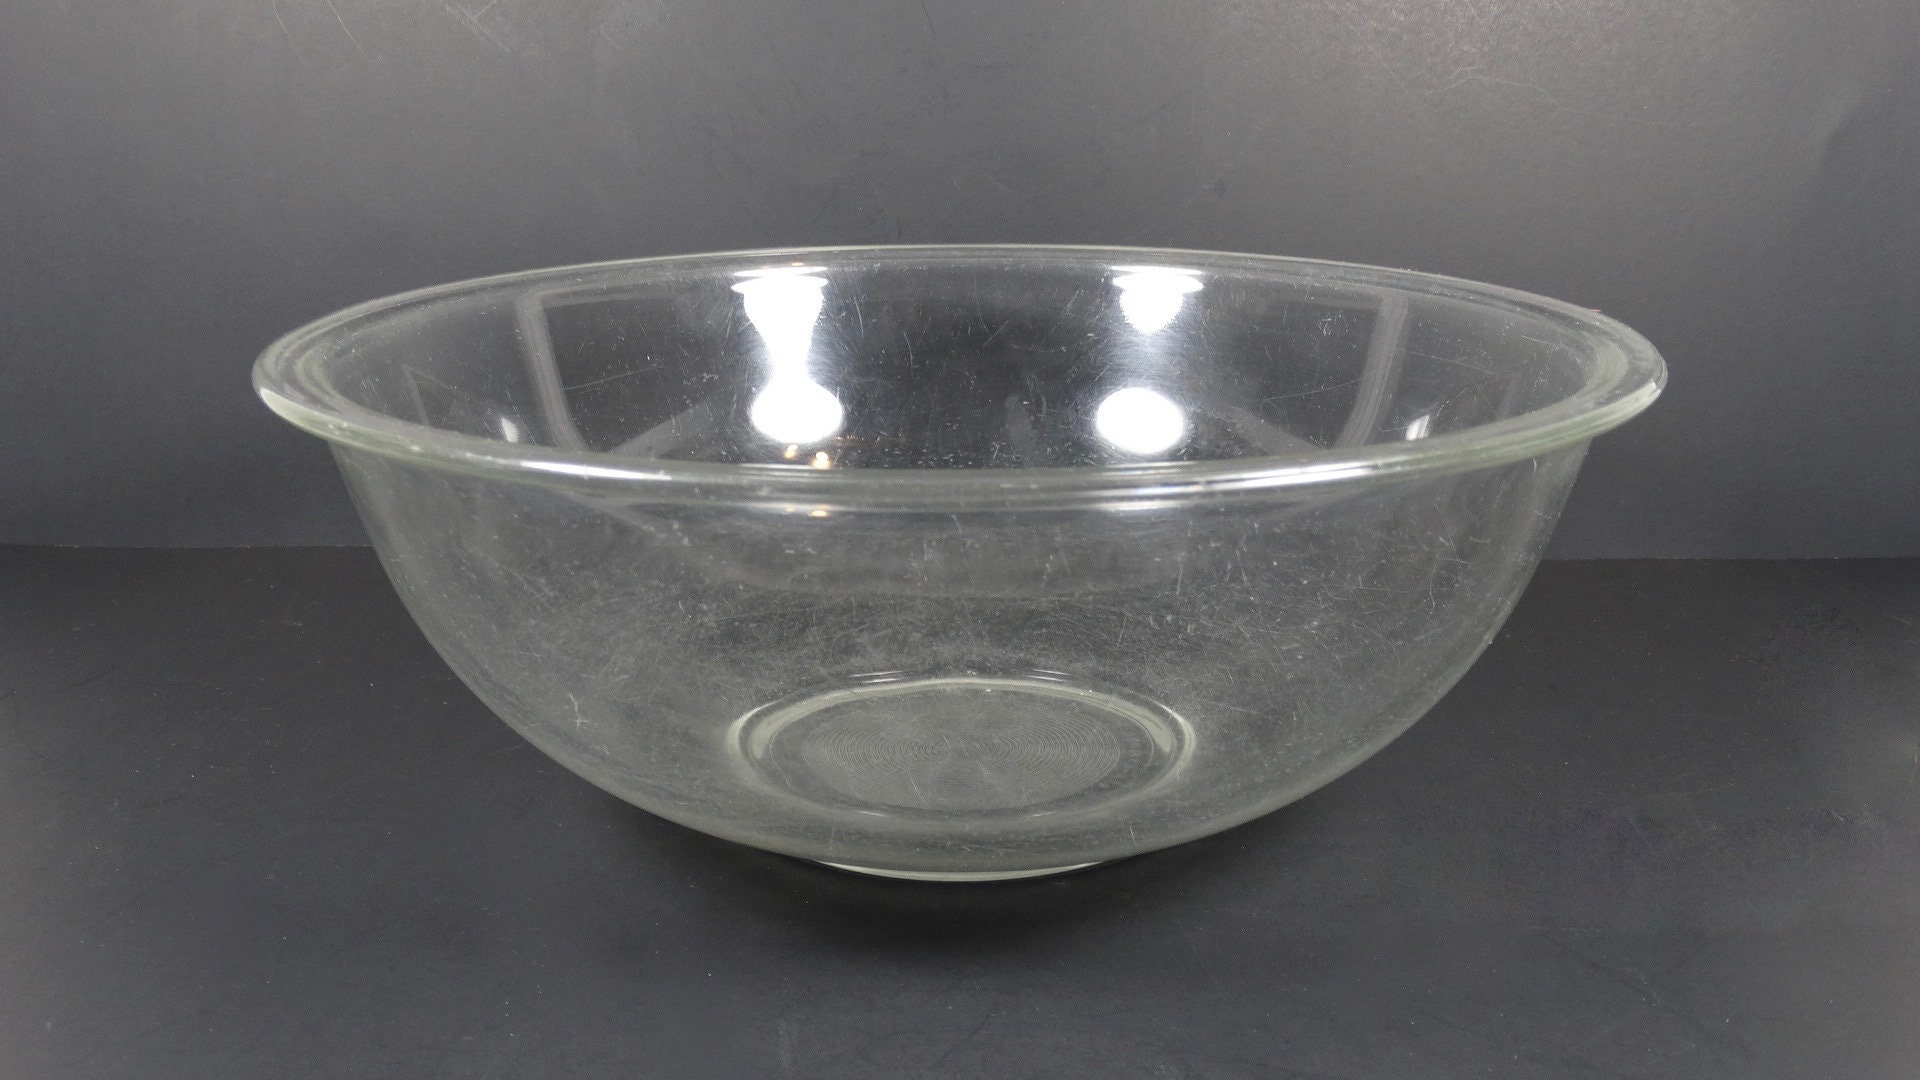 3-qt (2.8-L) Plastic Mixing Bowl - Shop